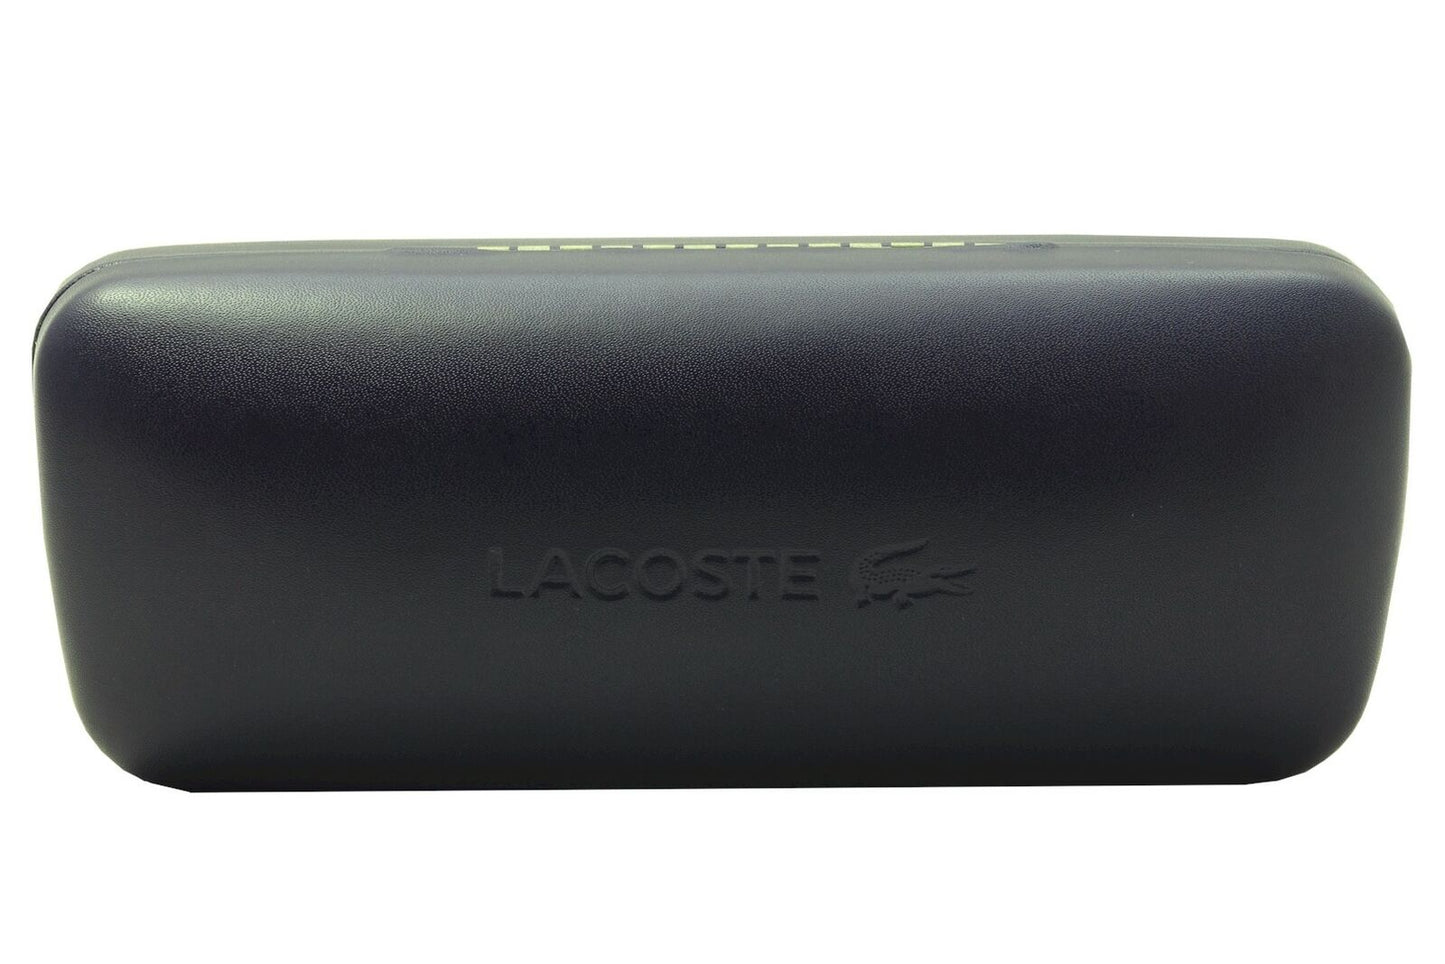 Lacoste L988S-002 54mm New Sunglasses